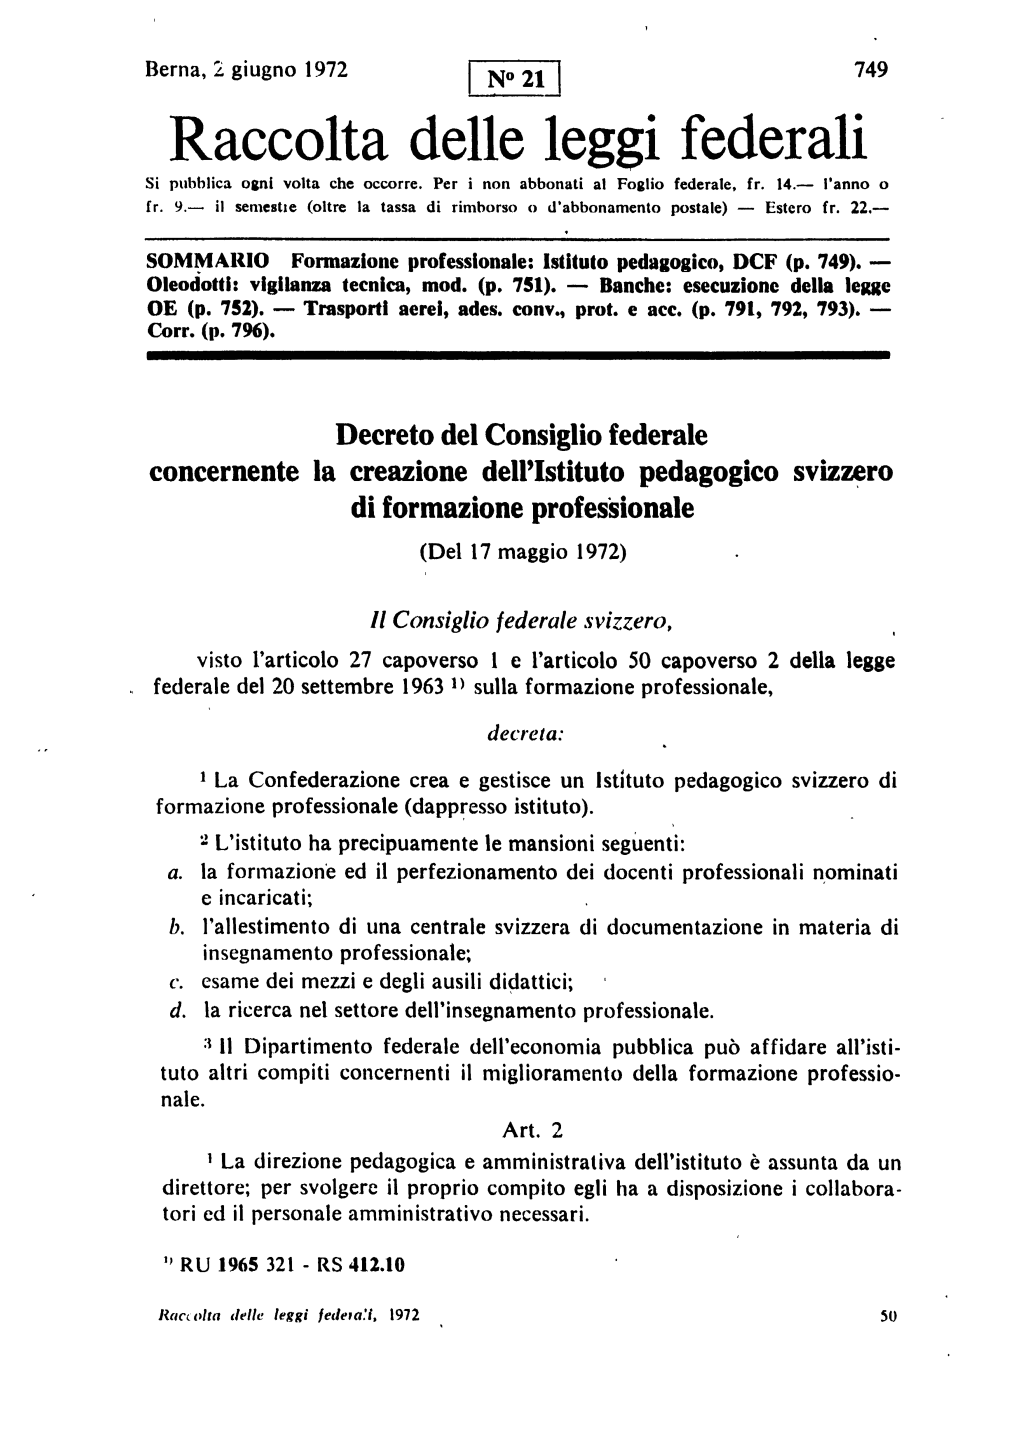 Il documento per la creazione dell’Istituto Svizzero di Pedagogia per la Formazione Professionale.